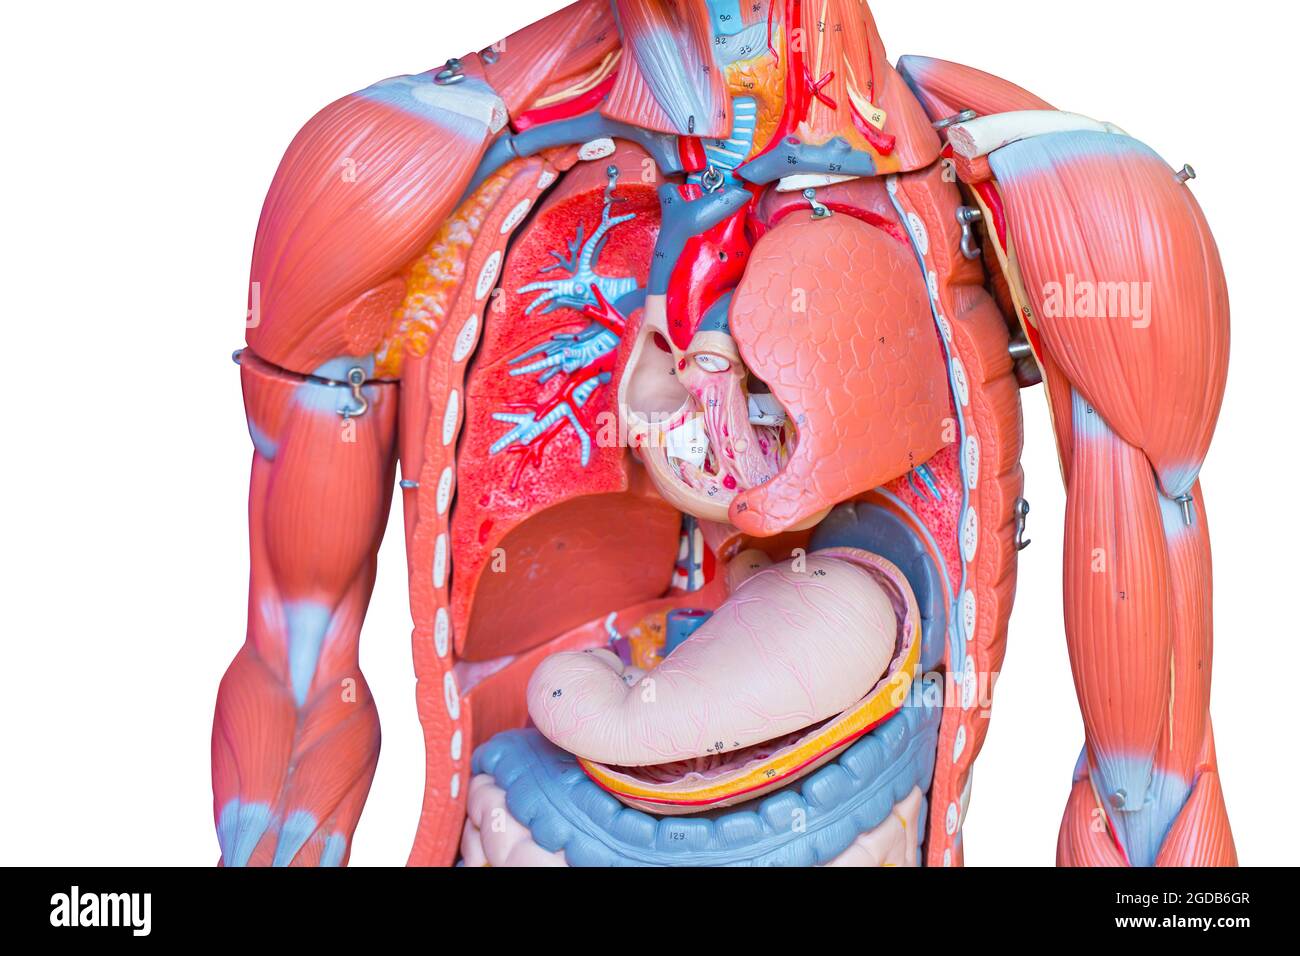 Oberkörper, menschliche männliche Brust innere Organe Lunge Herz und Magen Teil Modellfigur für die medizinische Ausbildung. Stockfoto